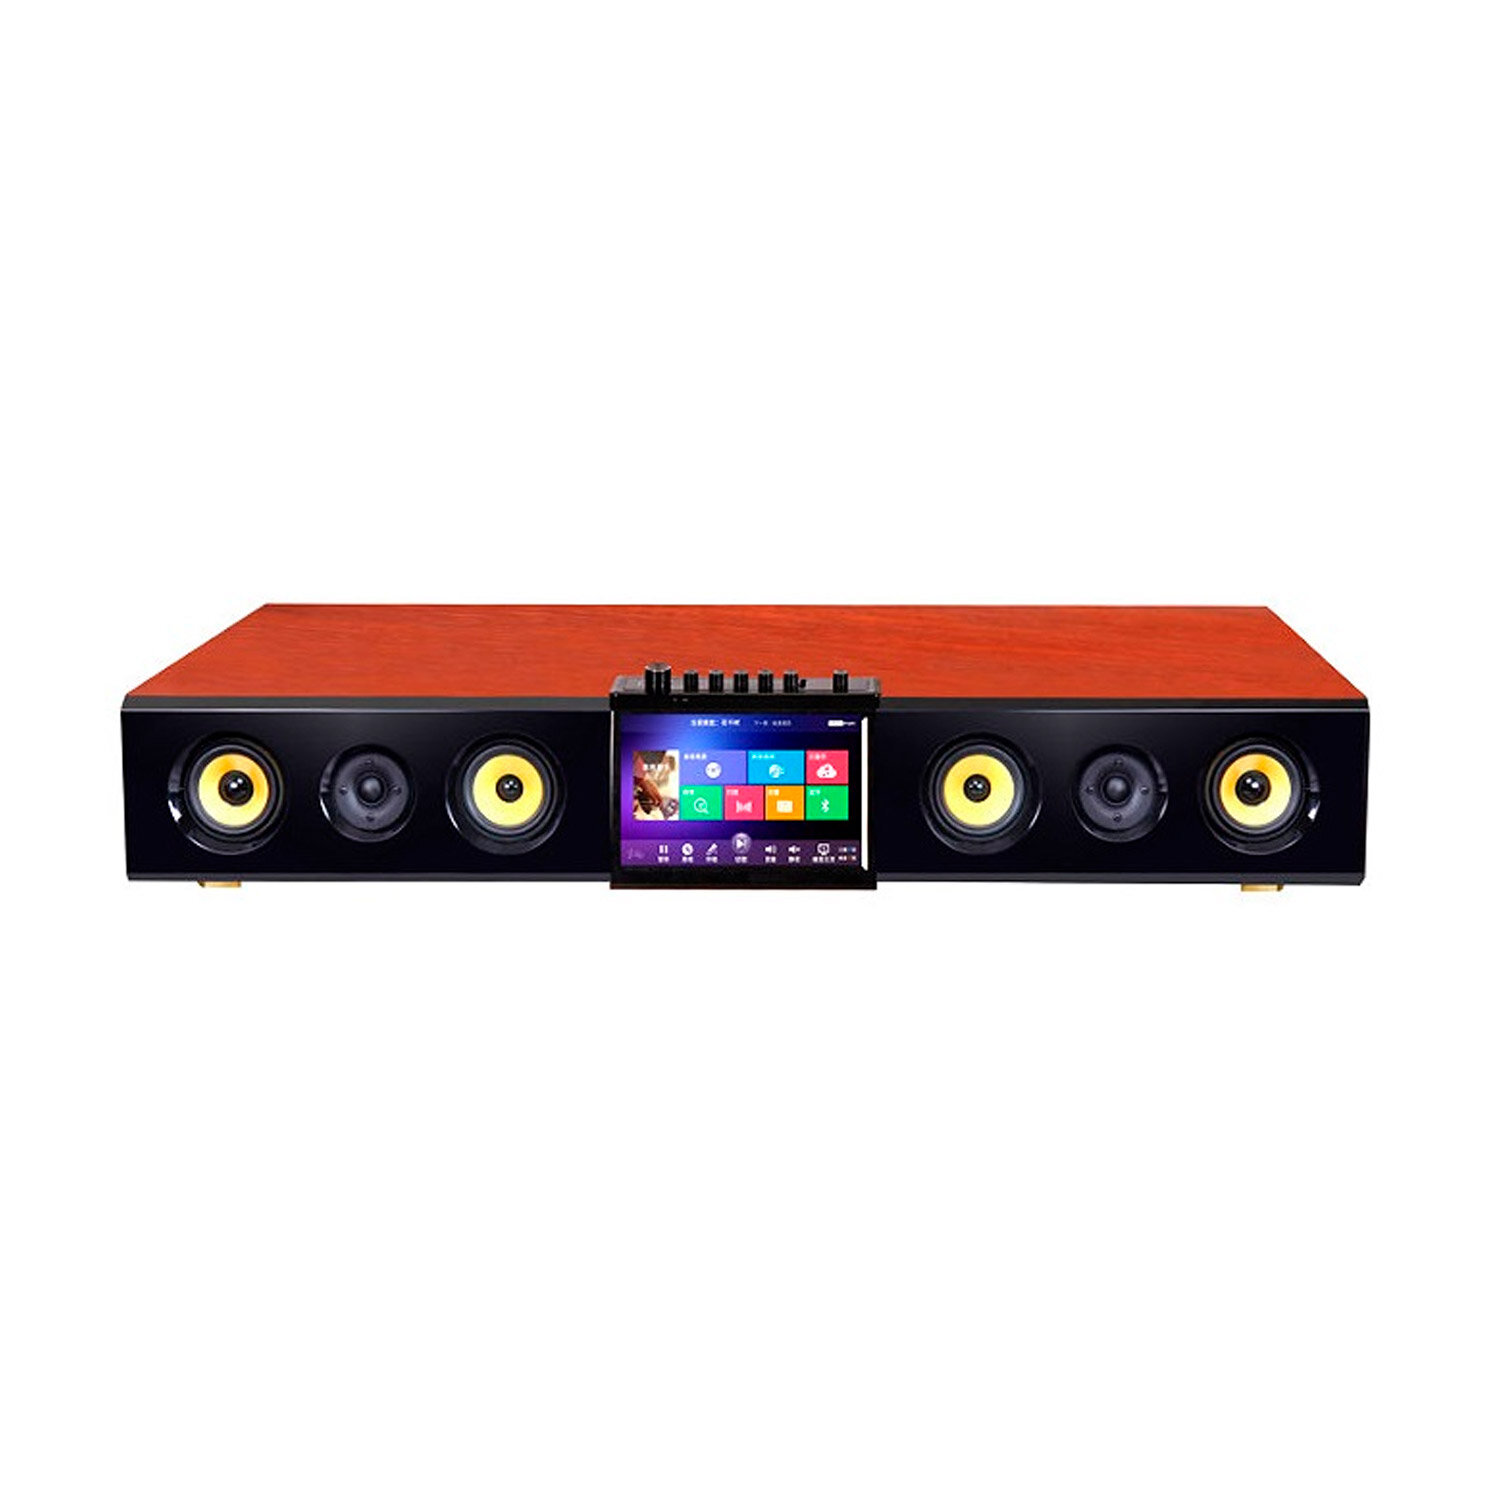 ESTRADA HD Soundbar Караоке смарт система с встроенным жестким диском 1Тб профессиональной радиосистемой с двумя микрофонами и активной акустической системой 2.1.